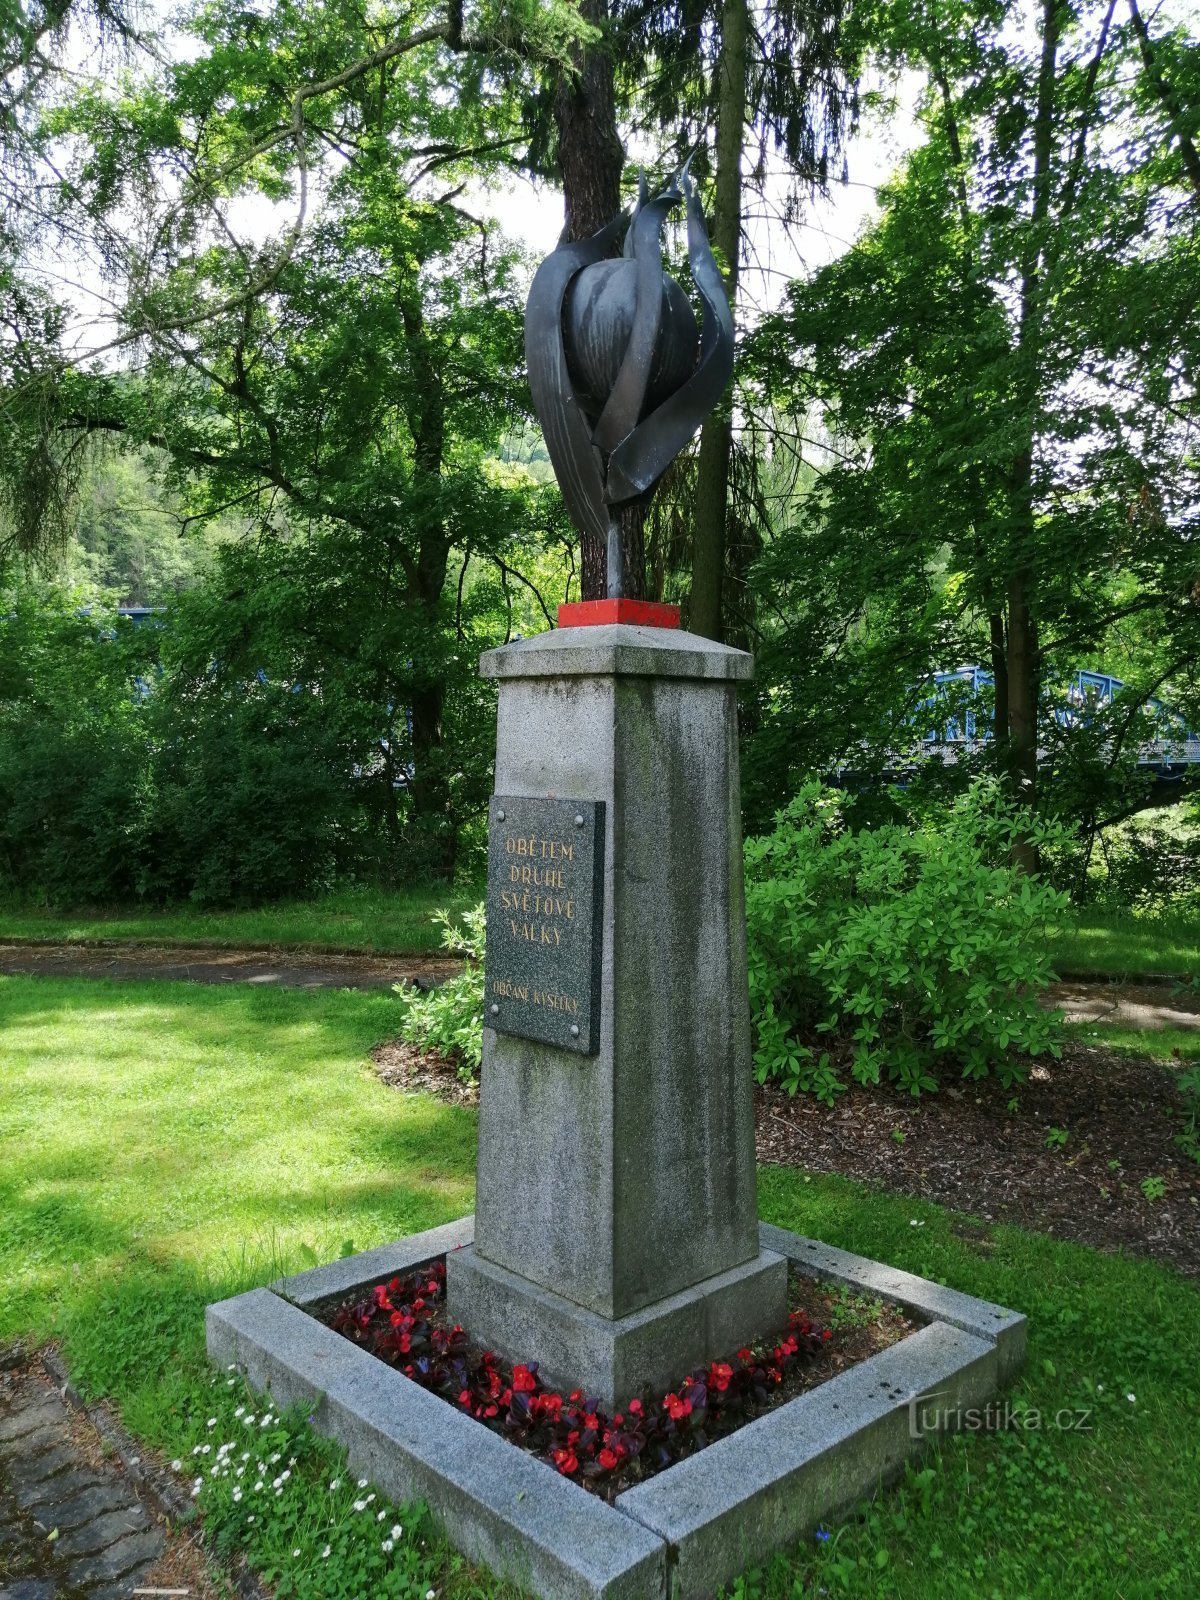 Μνημείο για τα θύματα του Β 'Παγκοσμίου Πολέμου - Kyselka